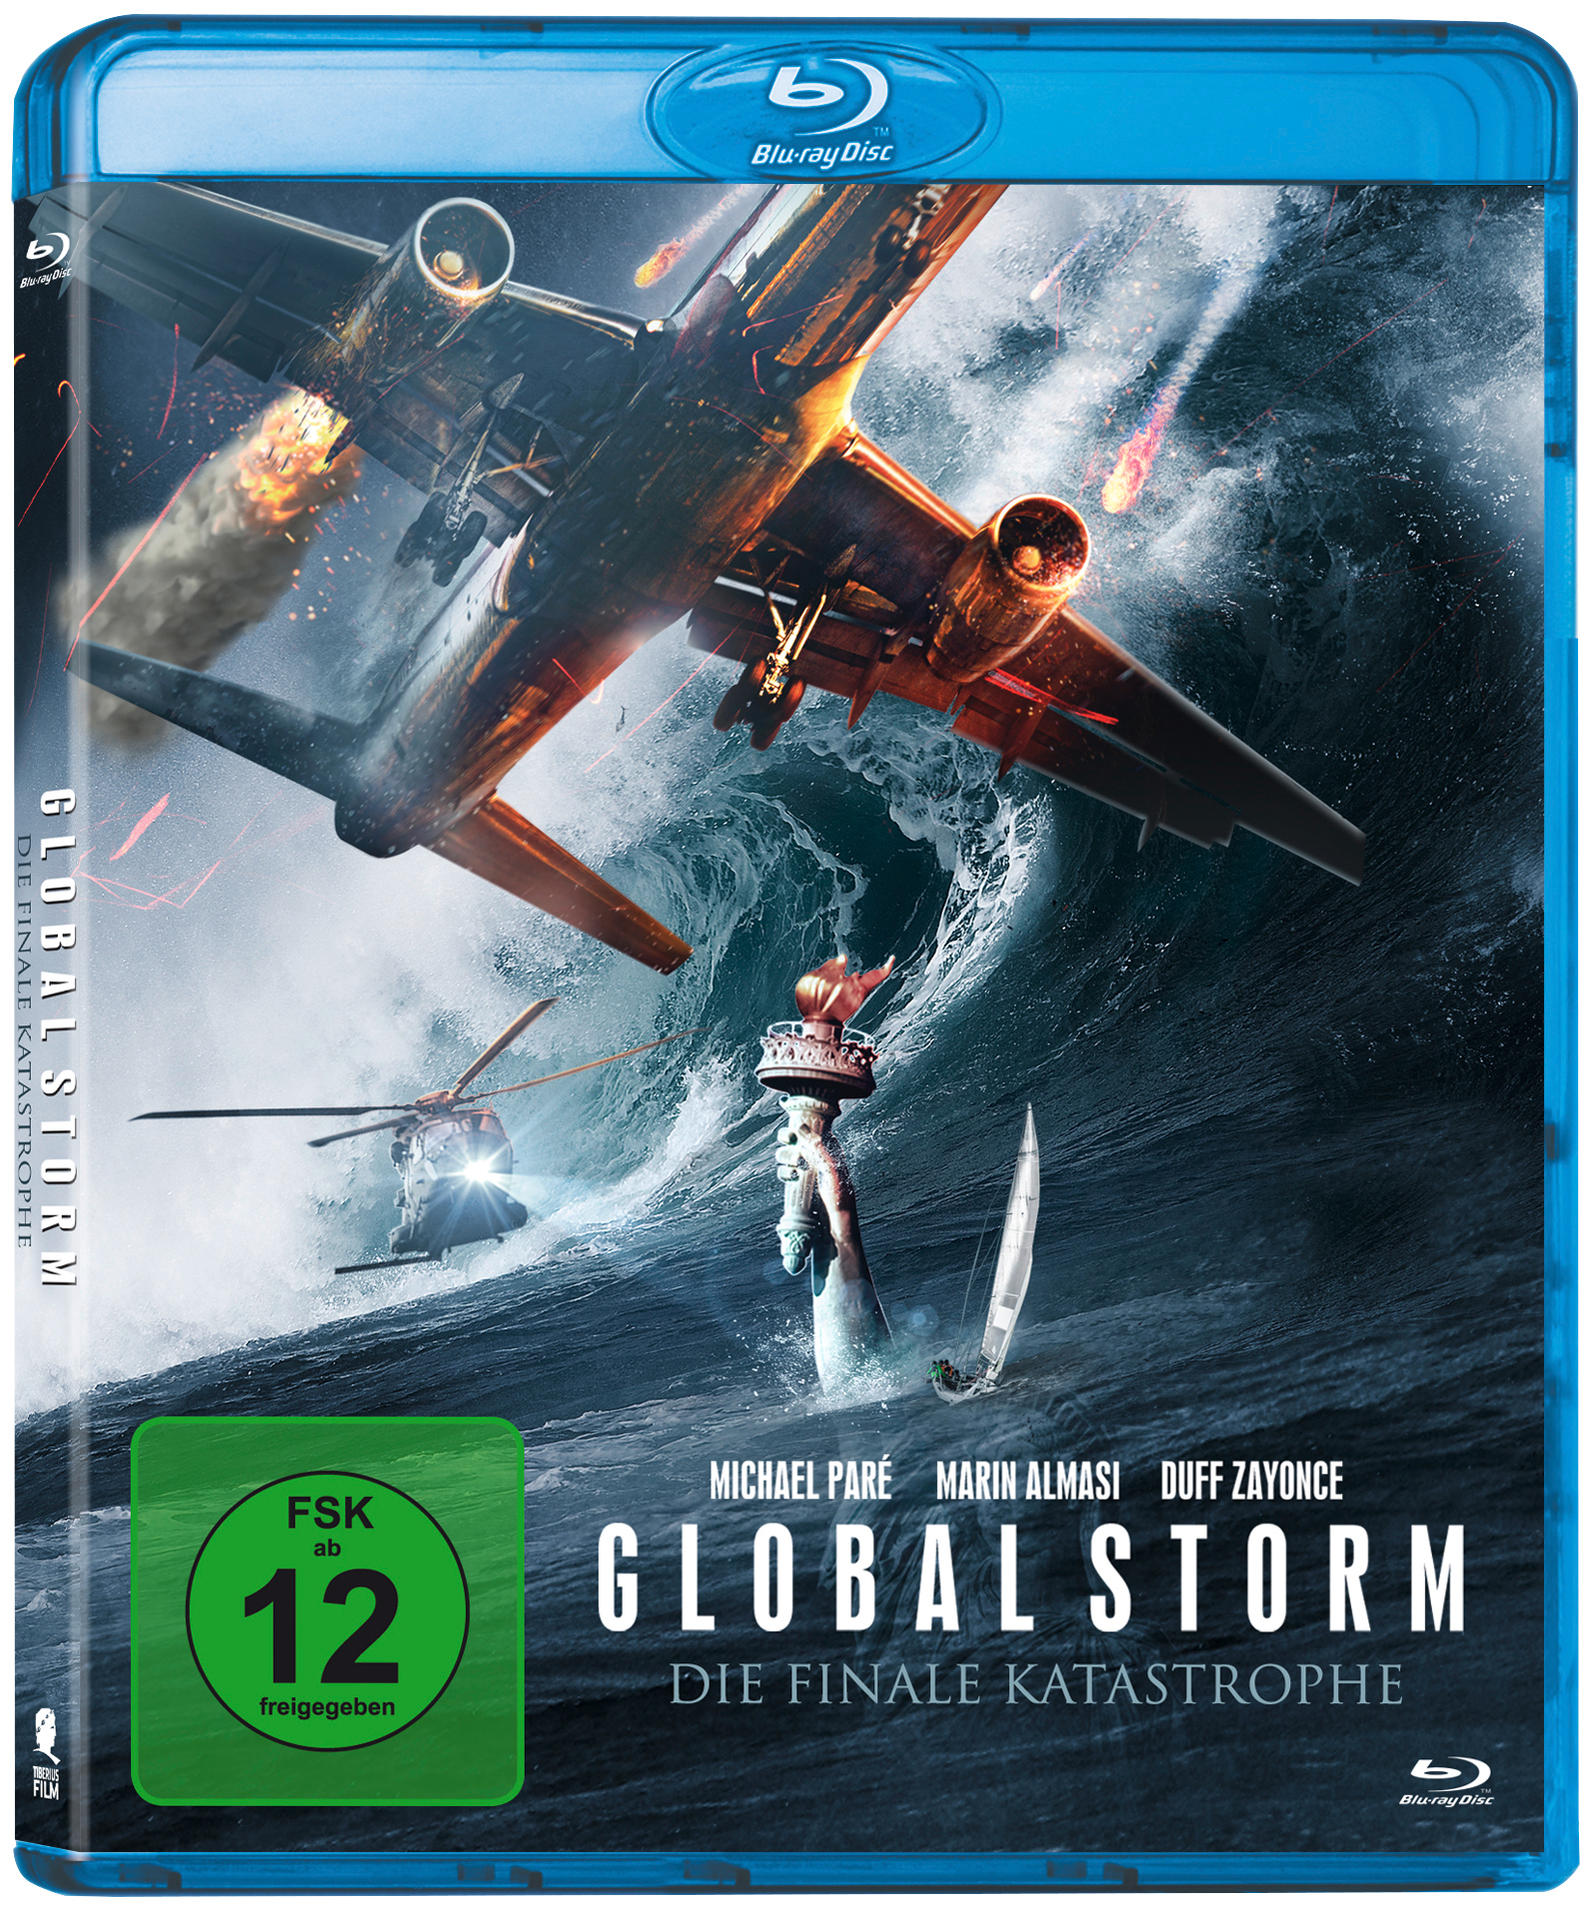 Global Storm - Die finale Blu-ray Katastrophe